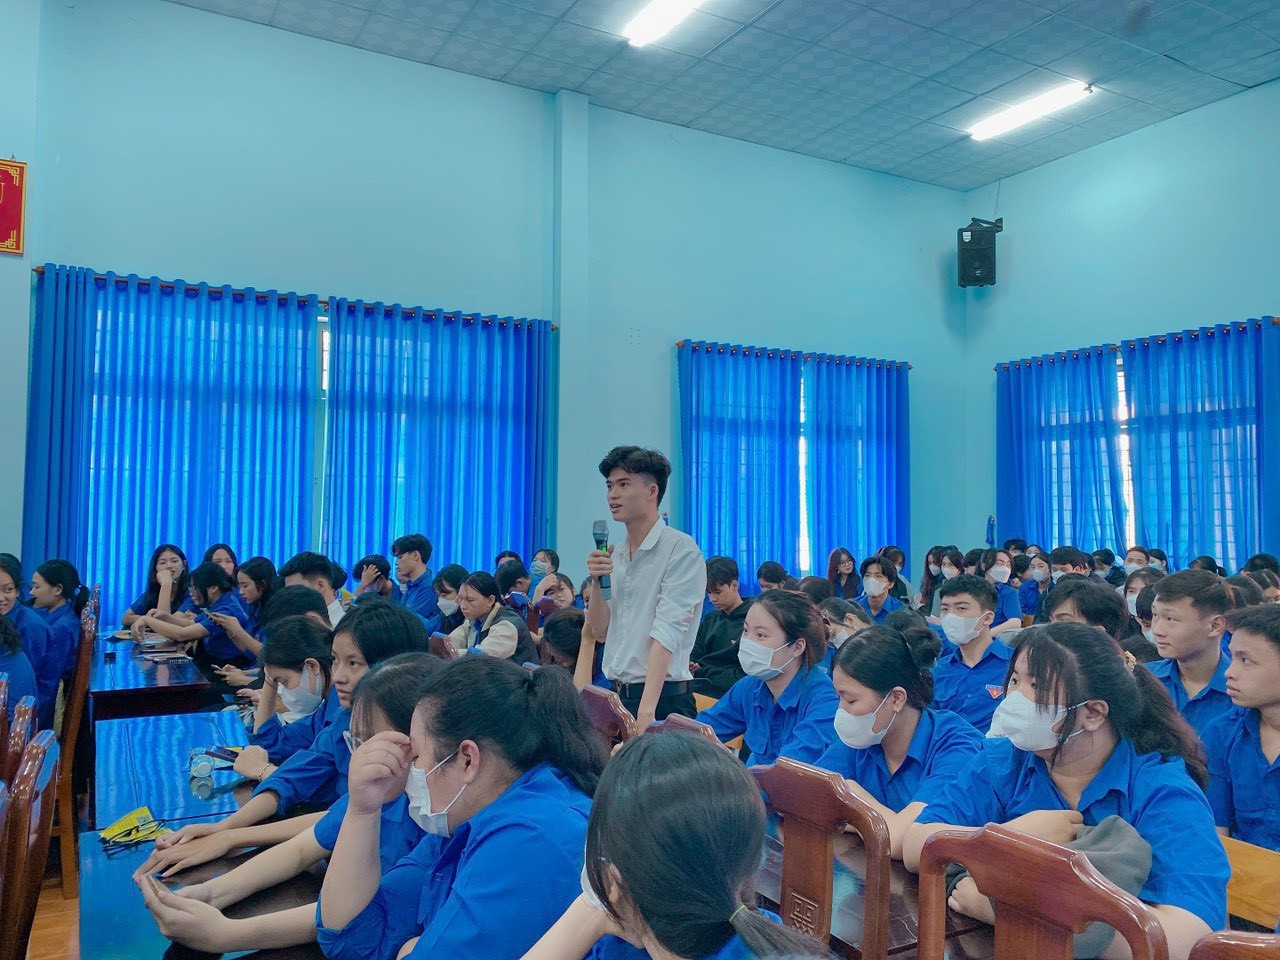 TTọa đàm tư vấn hướng nghiệp tại Trường THPT Đồng Phú, Bình Phước